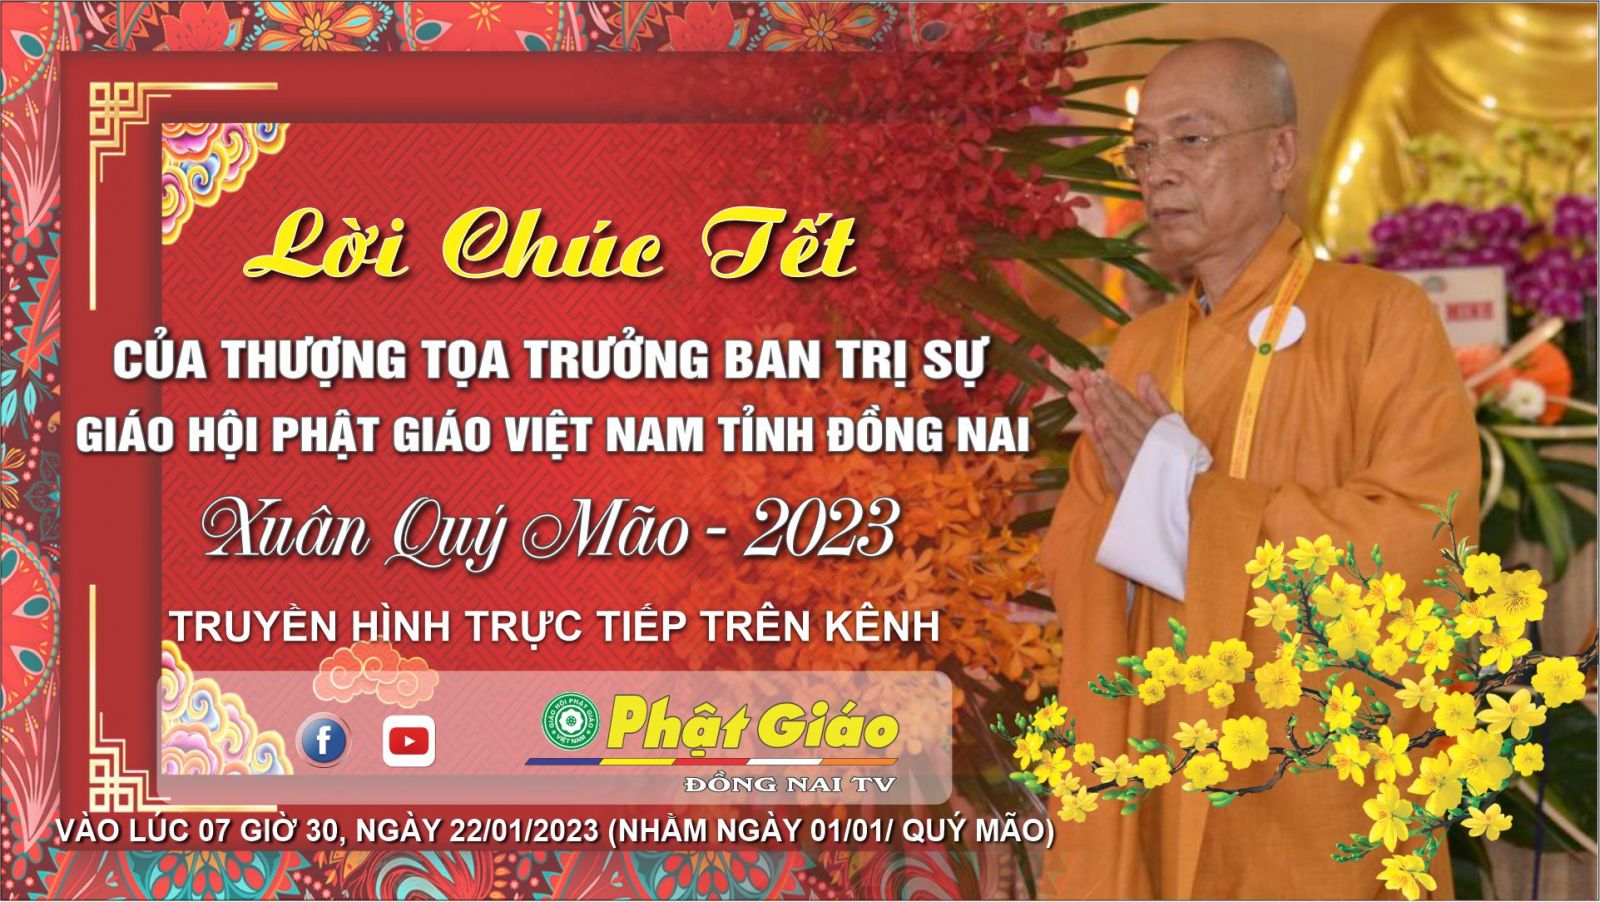 Lời Chúc Tết của Thượng tọa Trưởng Ban Trị sự GHPGVN tỉnh Đồng Nai - Xuân Quý Mão - 2023